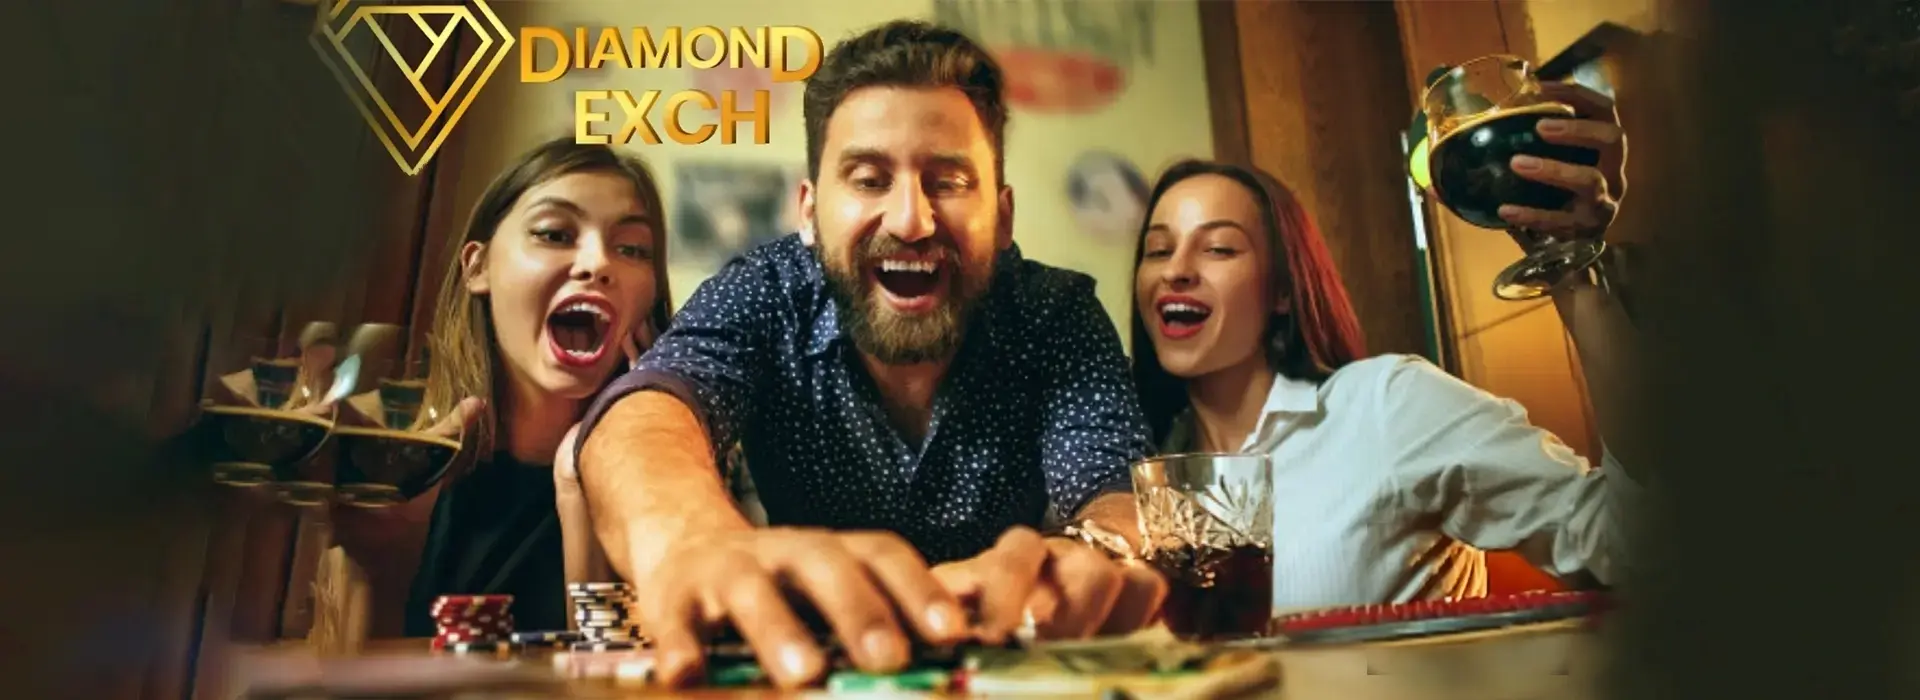 Diamond Exchange Id